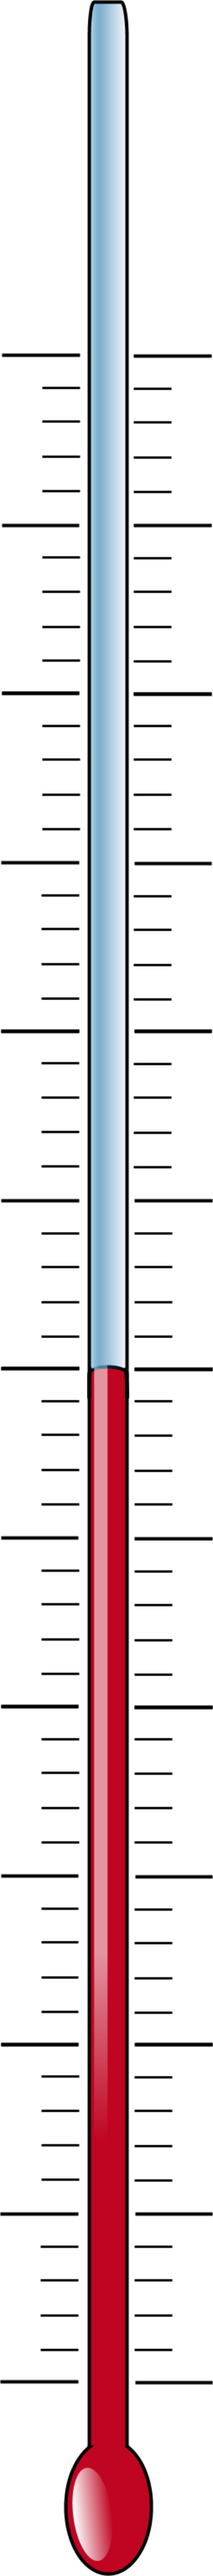 Temperature thermometer vector clip art